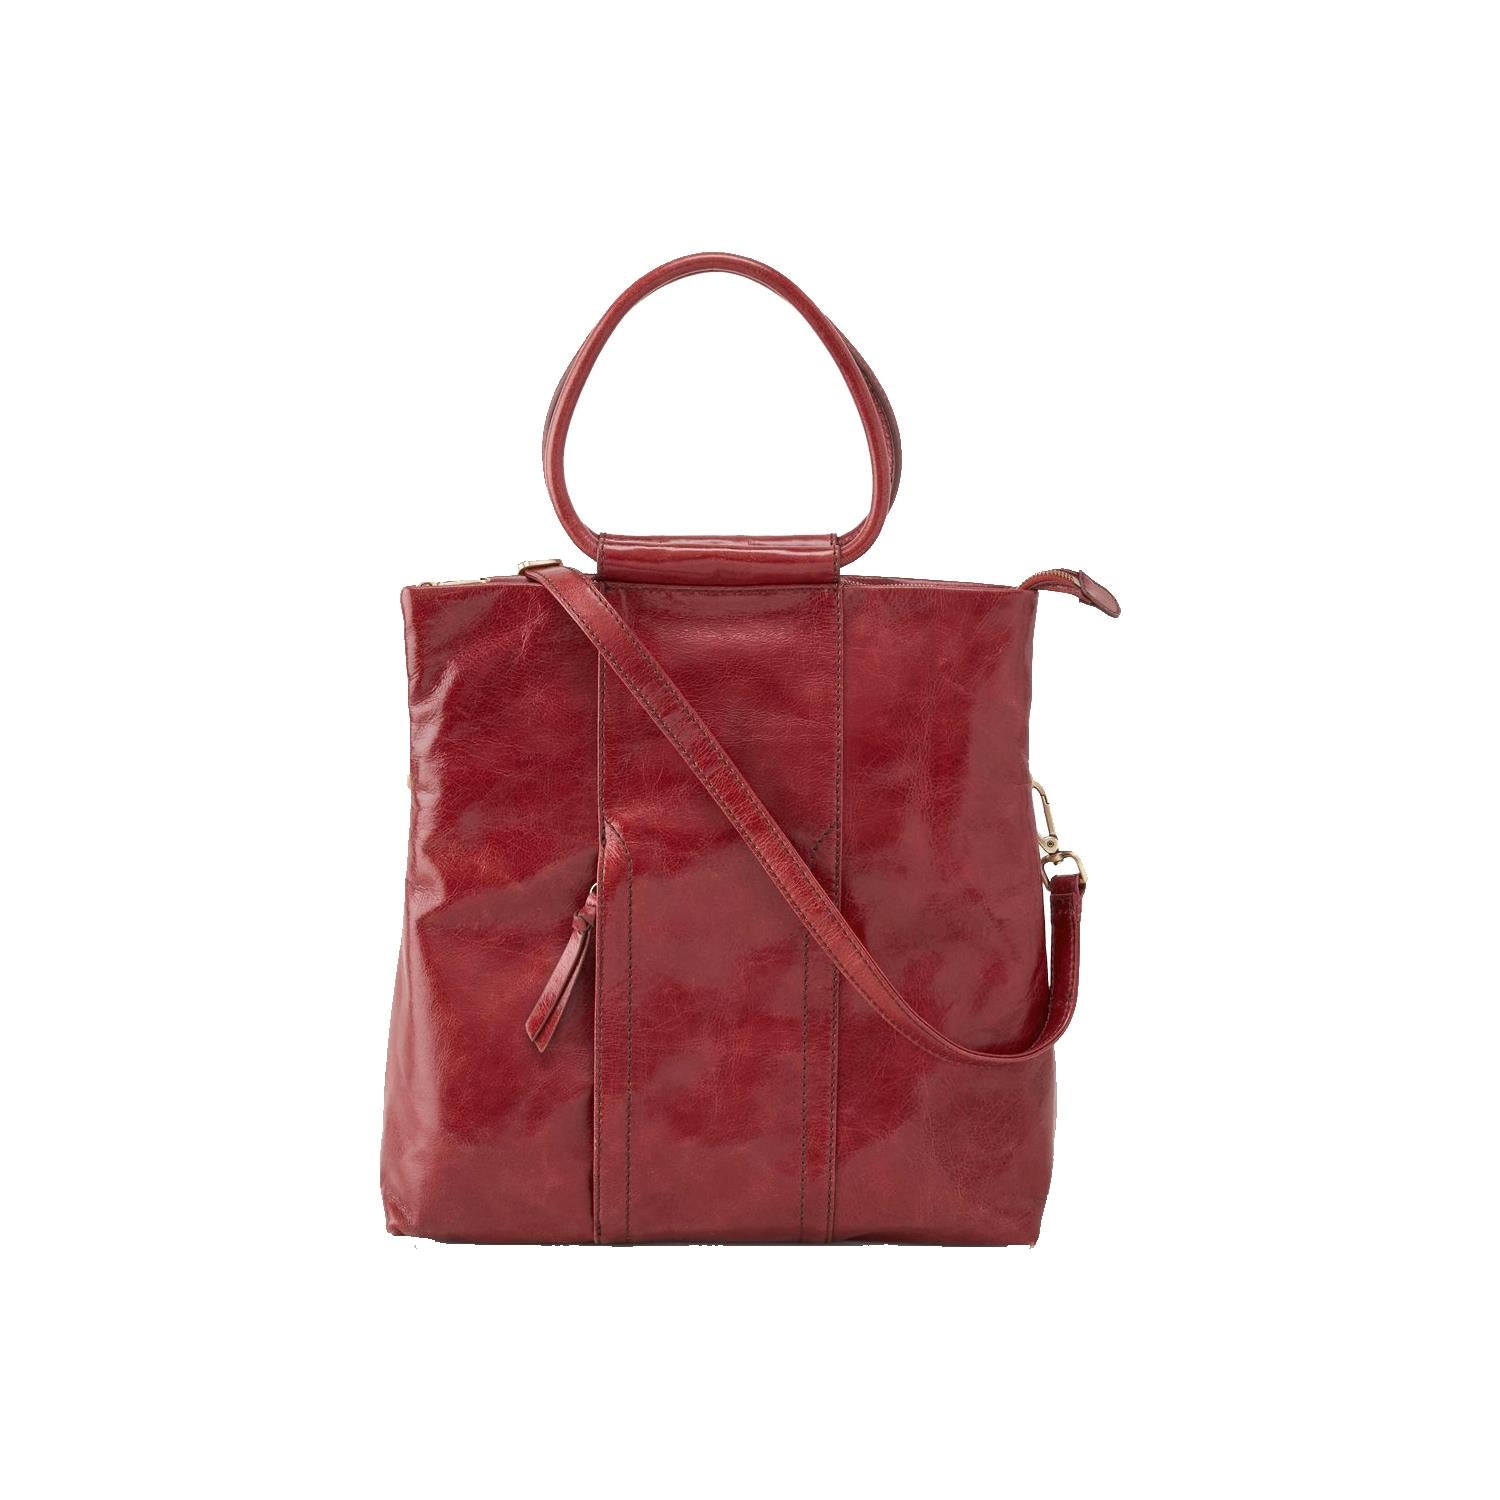 fashion unique design fashion ladies bag and handbag